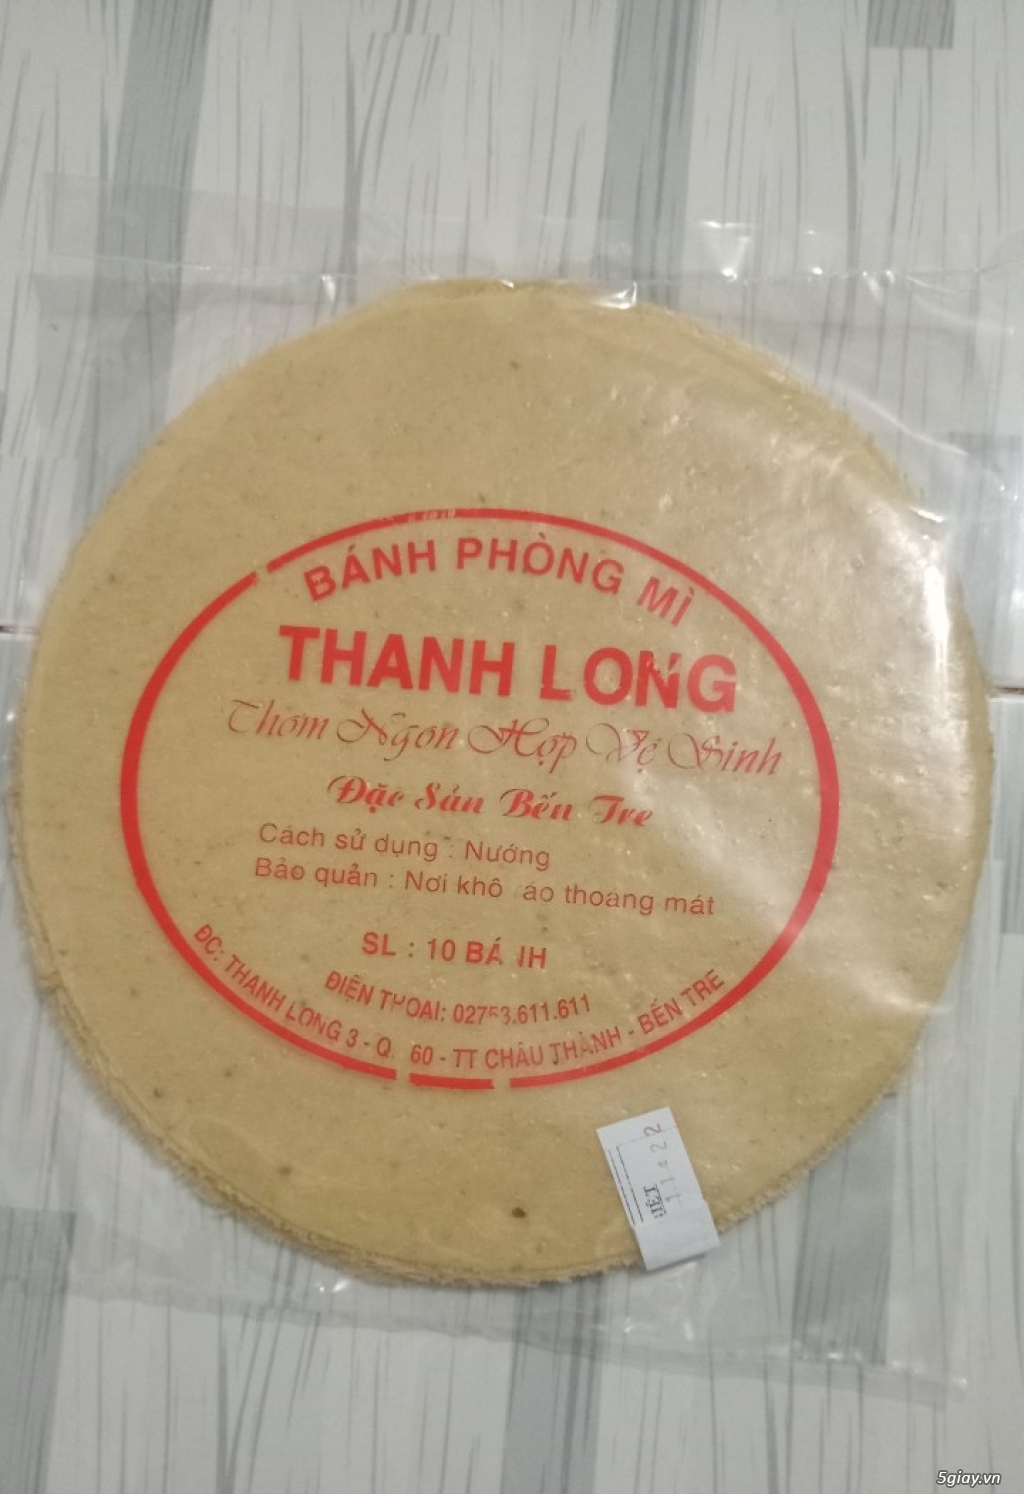 Bánh phồng Thanh Long (loại nướng) - Đặc sản Bến Tre - 10